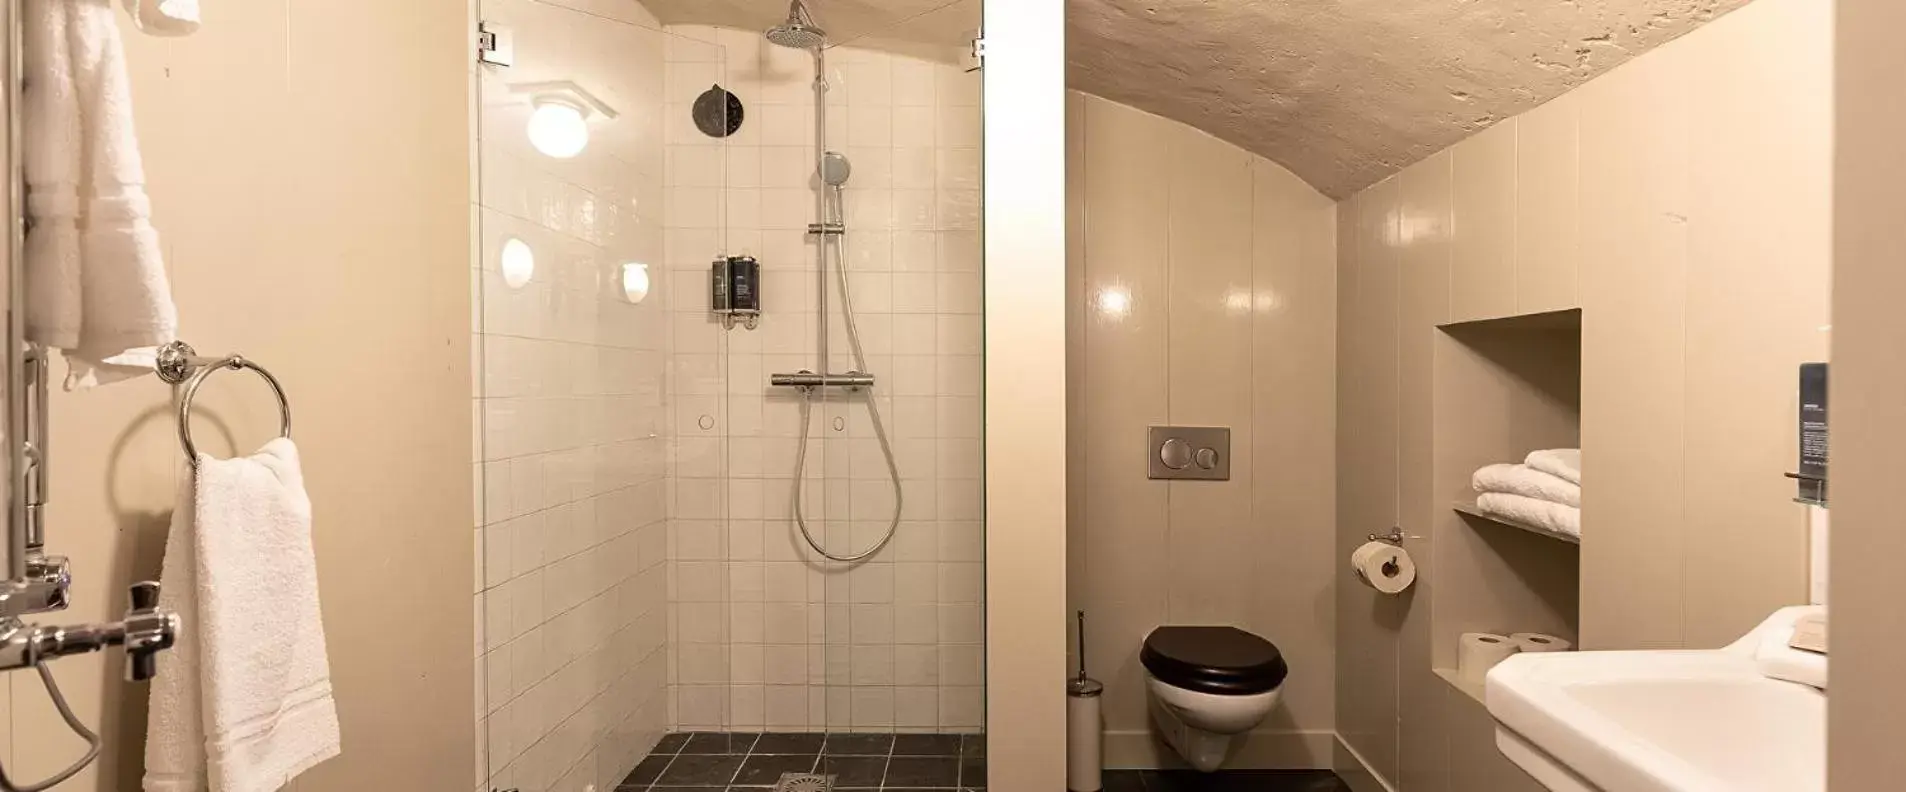 Bathroom in Hotel Beijers